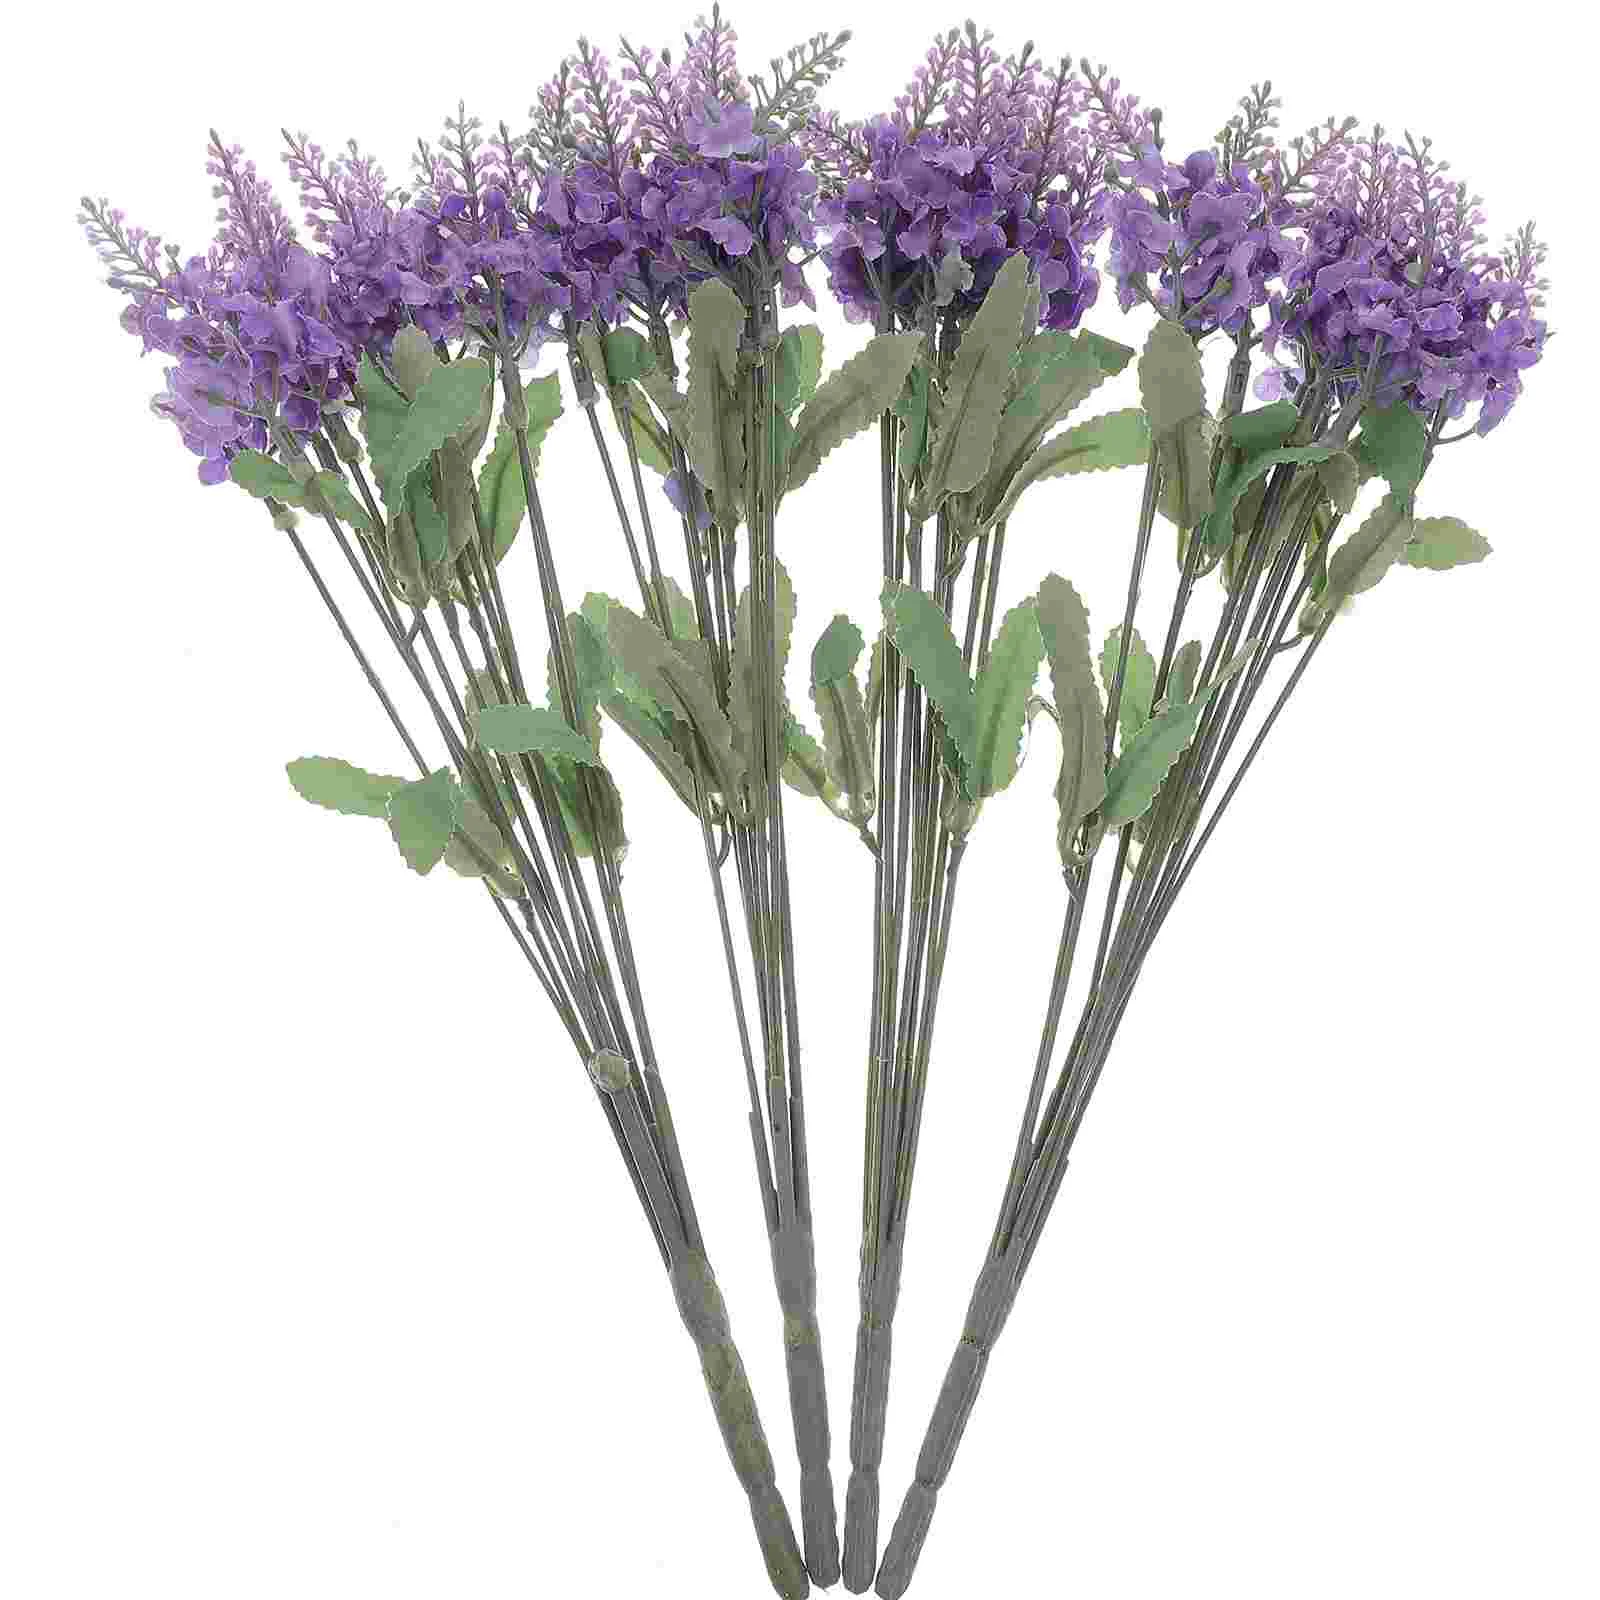 

4 Pcs Lavender Bouquet Fake Plants Faux Outdoor Plantsations Tables Outdoor Home Vase Simulated Decorate False Ornament